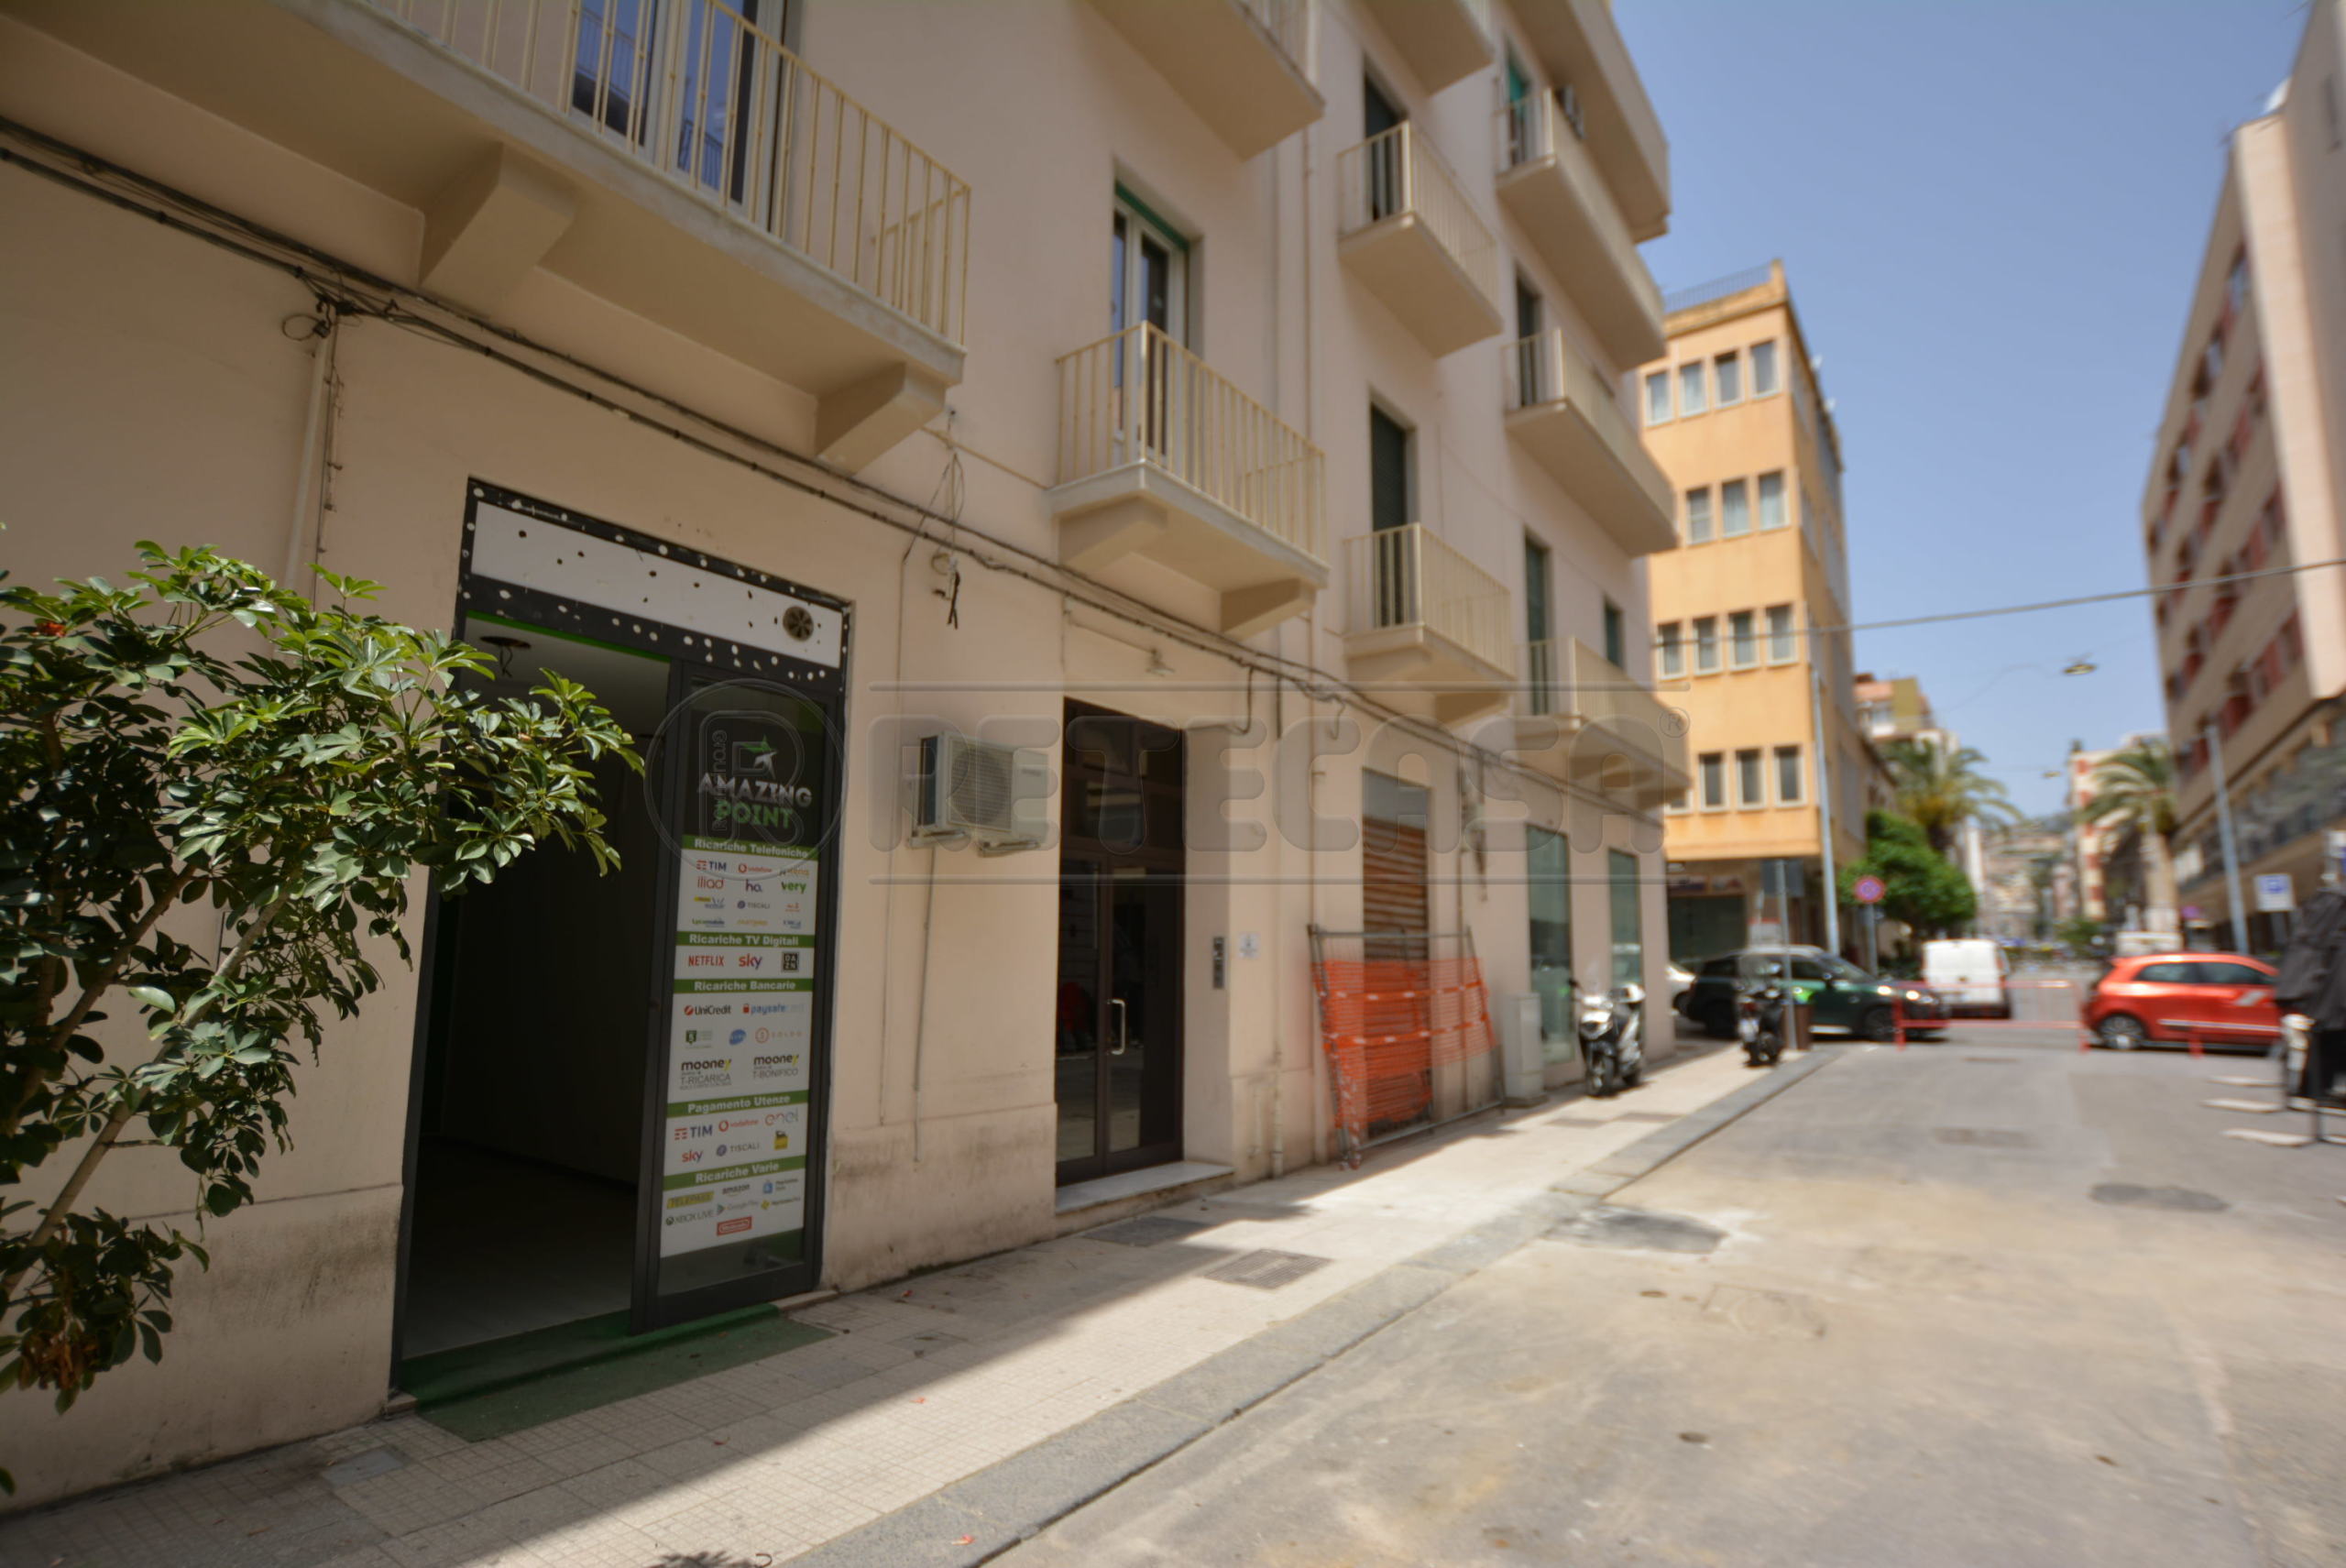 Locale commerciale in affitto in via camiciotti 25, Messina